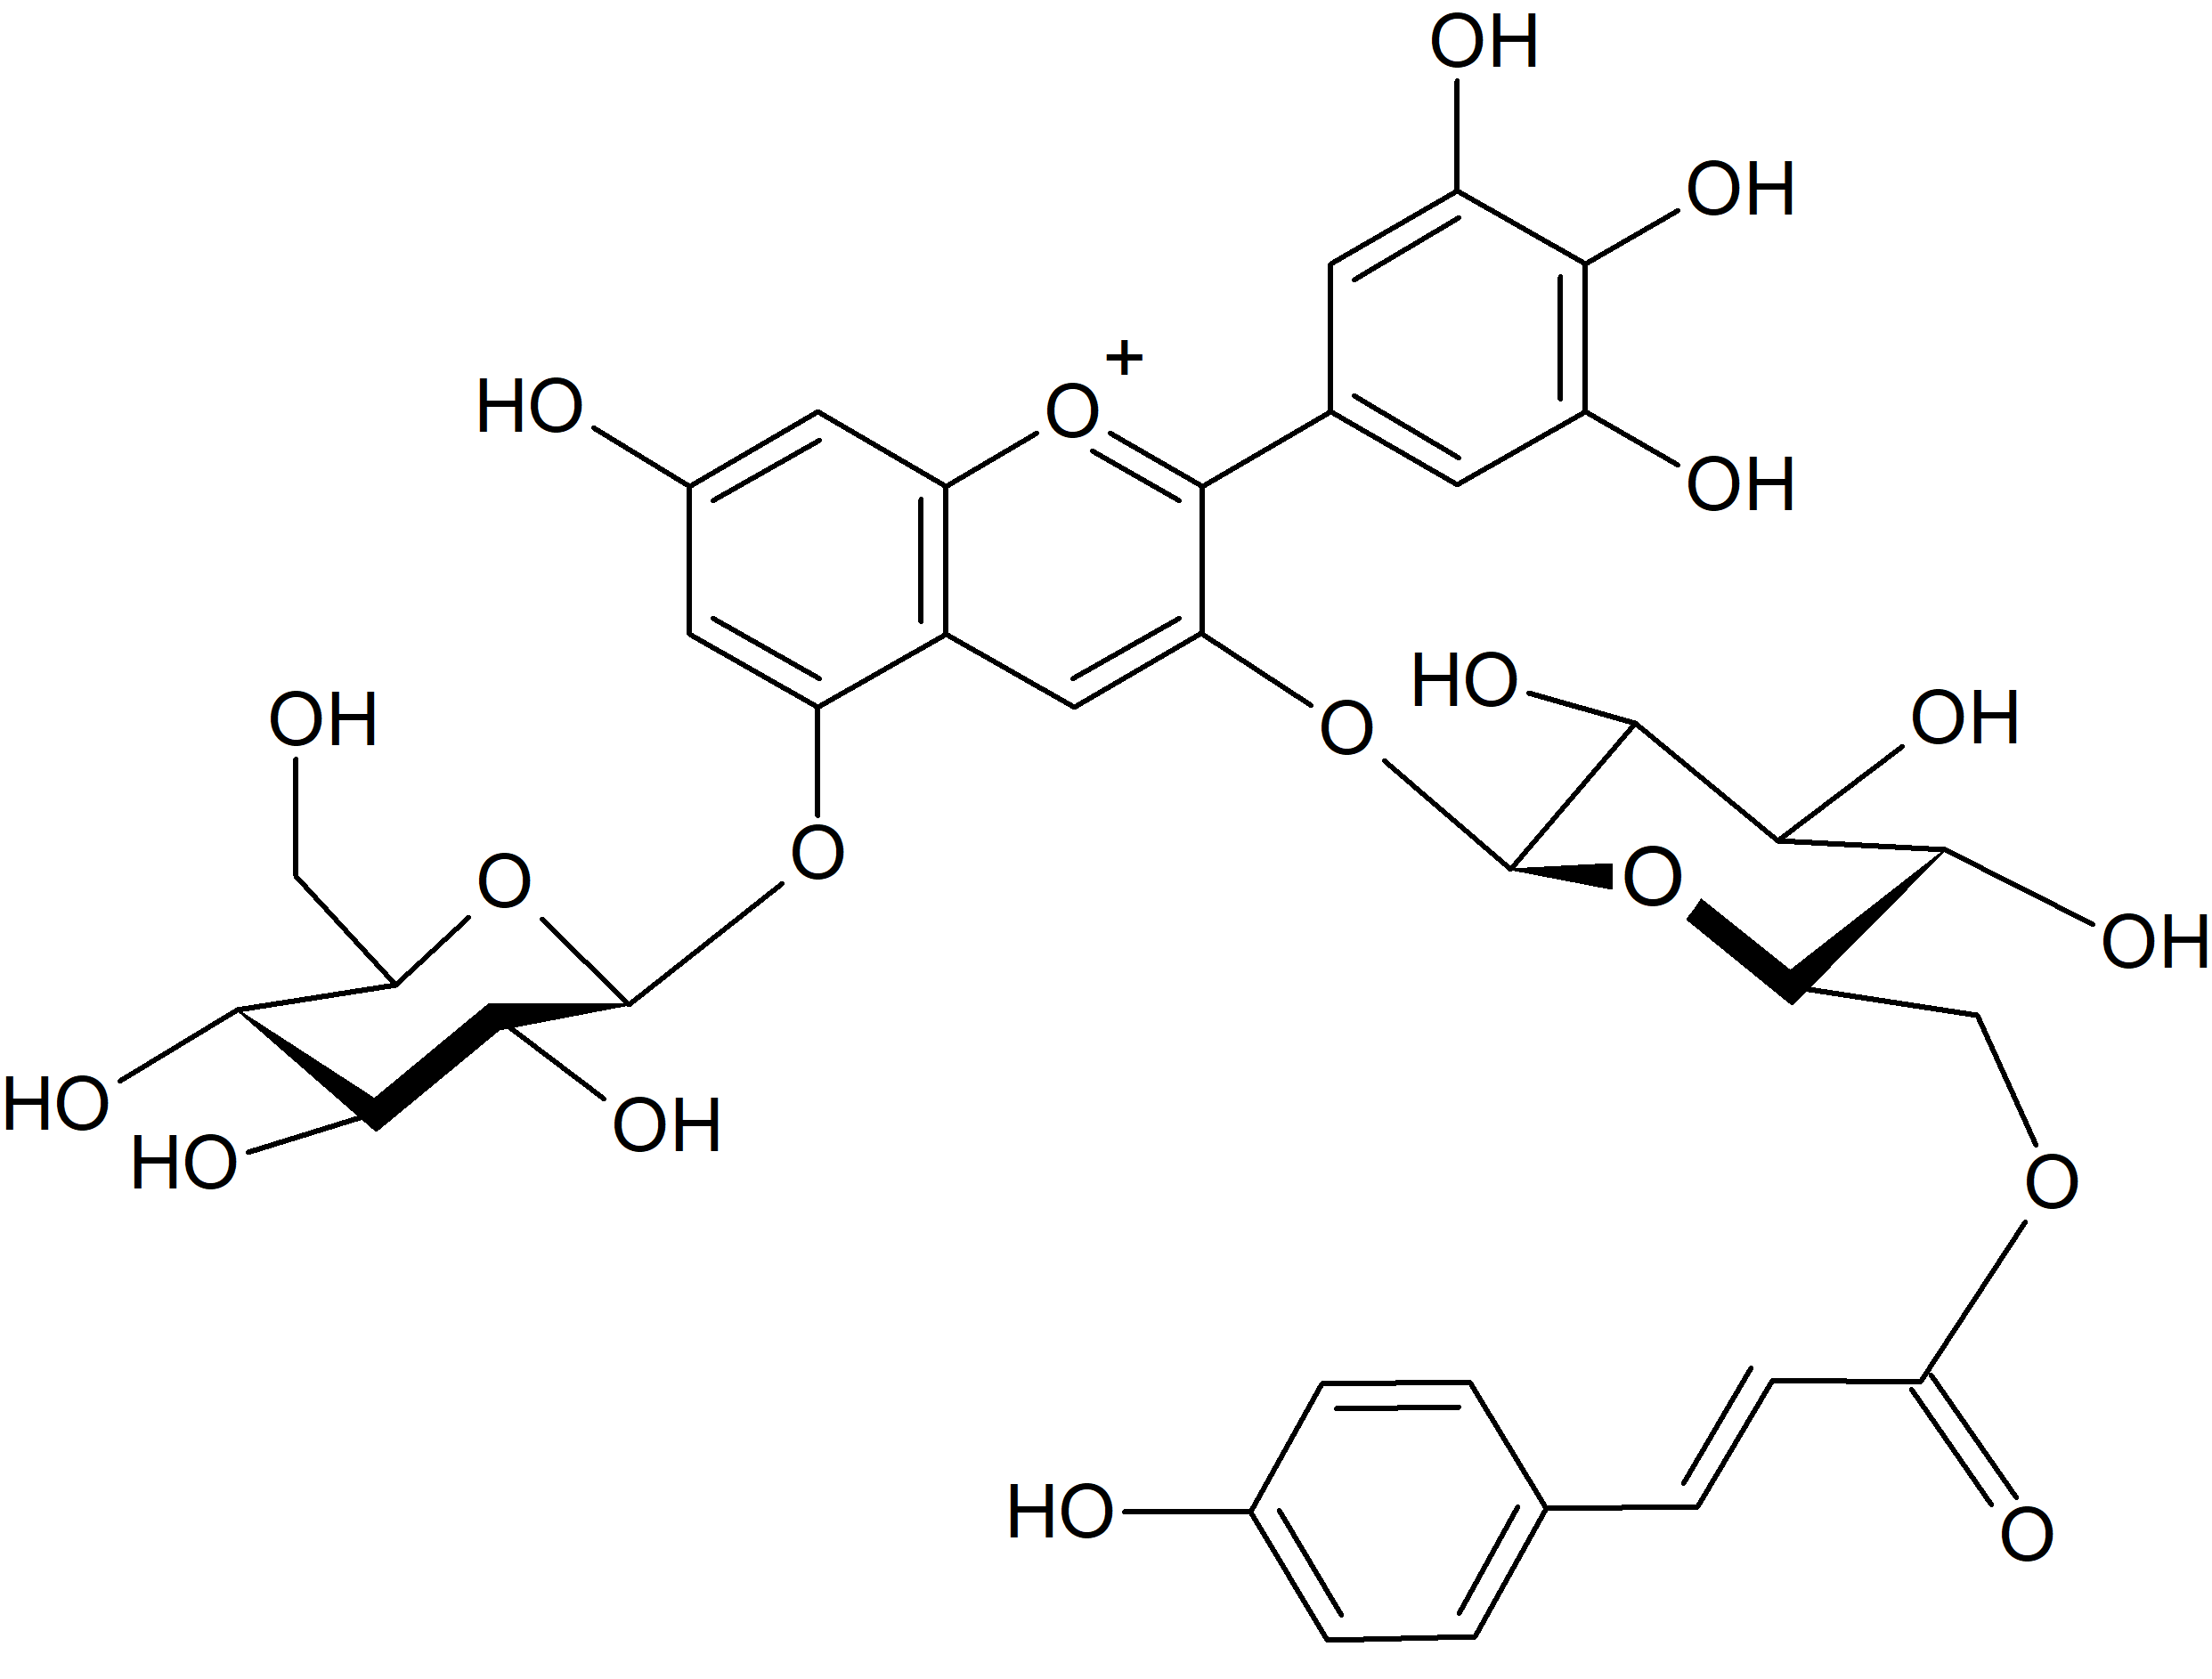 Delphinidin 3-O-(6'''-p-coumaroylrutinoside)-5-O-glucoside